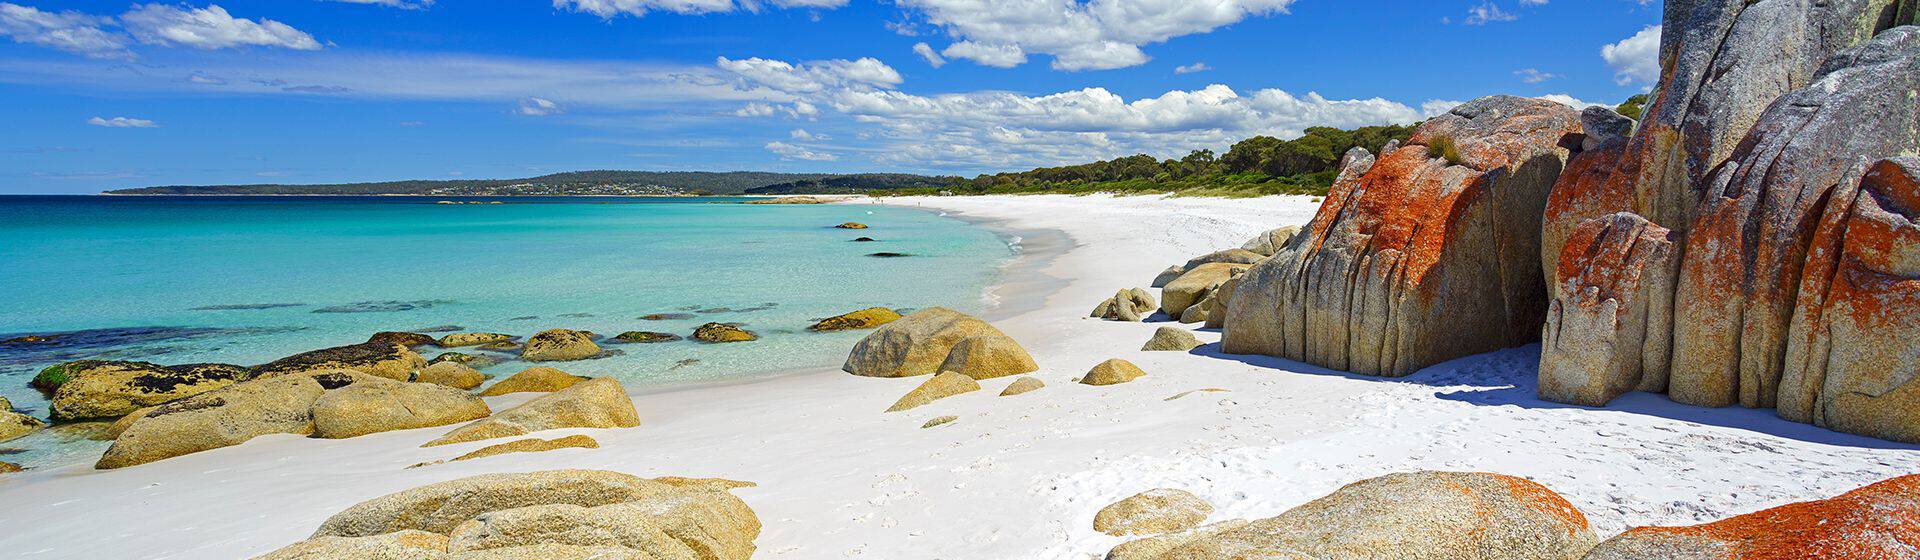 Holidays to Tasmania Image